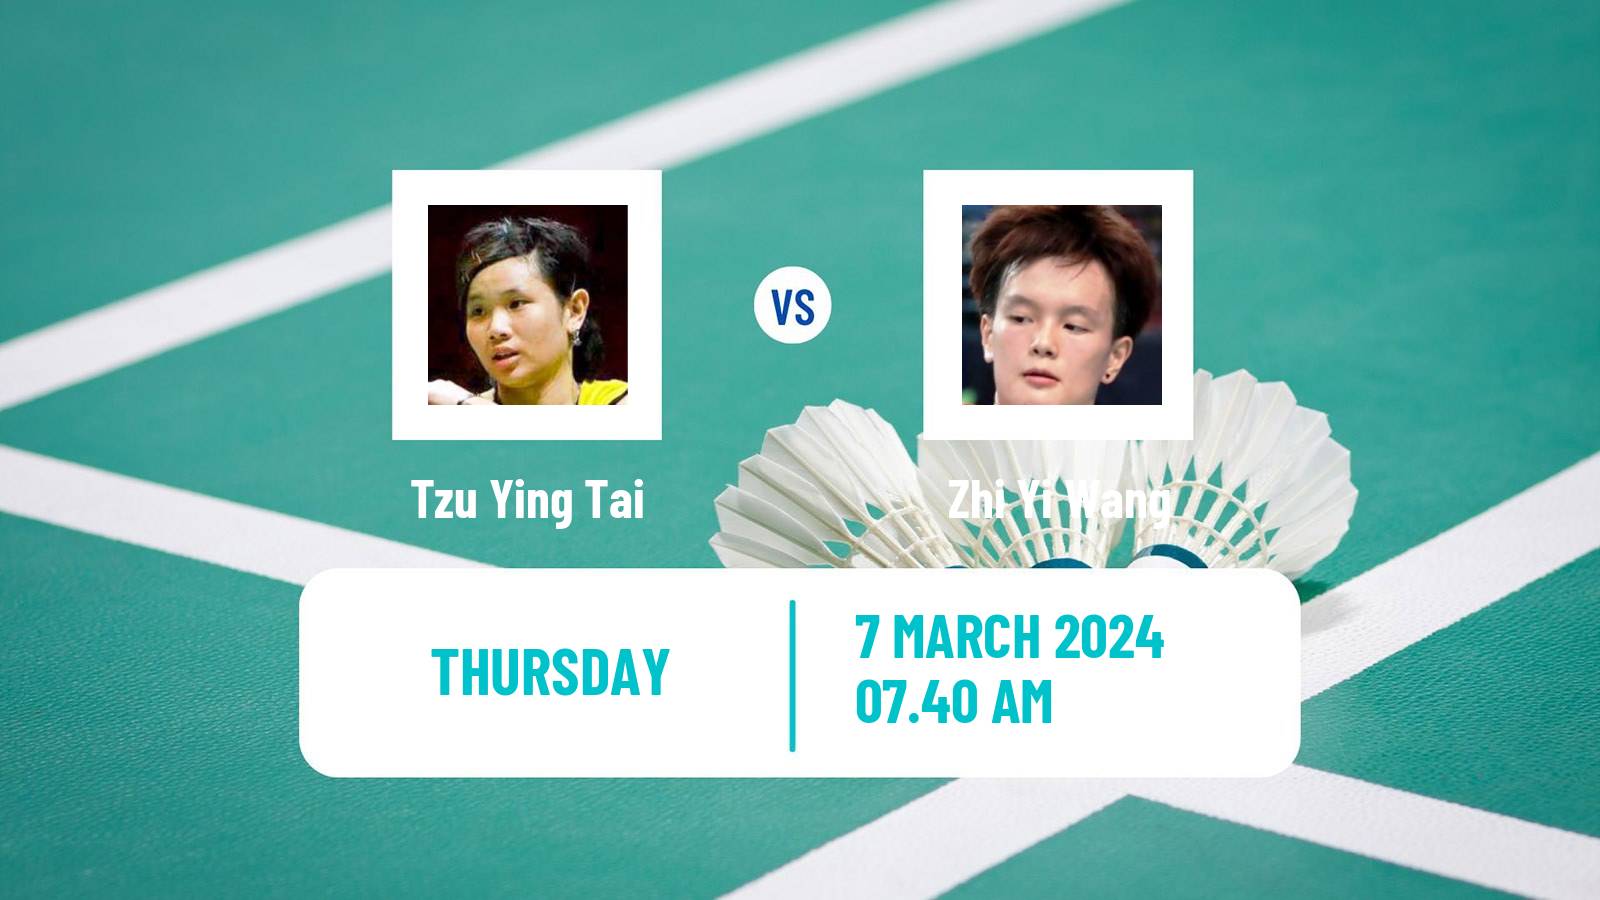 Badminton BWF World Tour French Open Women Tzu Ying Tai - Zhi Yi Wang